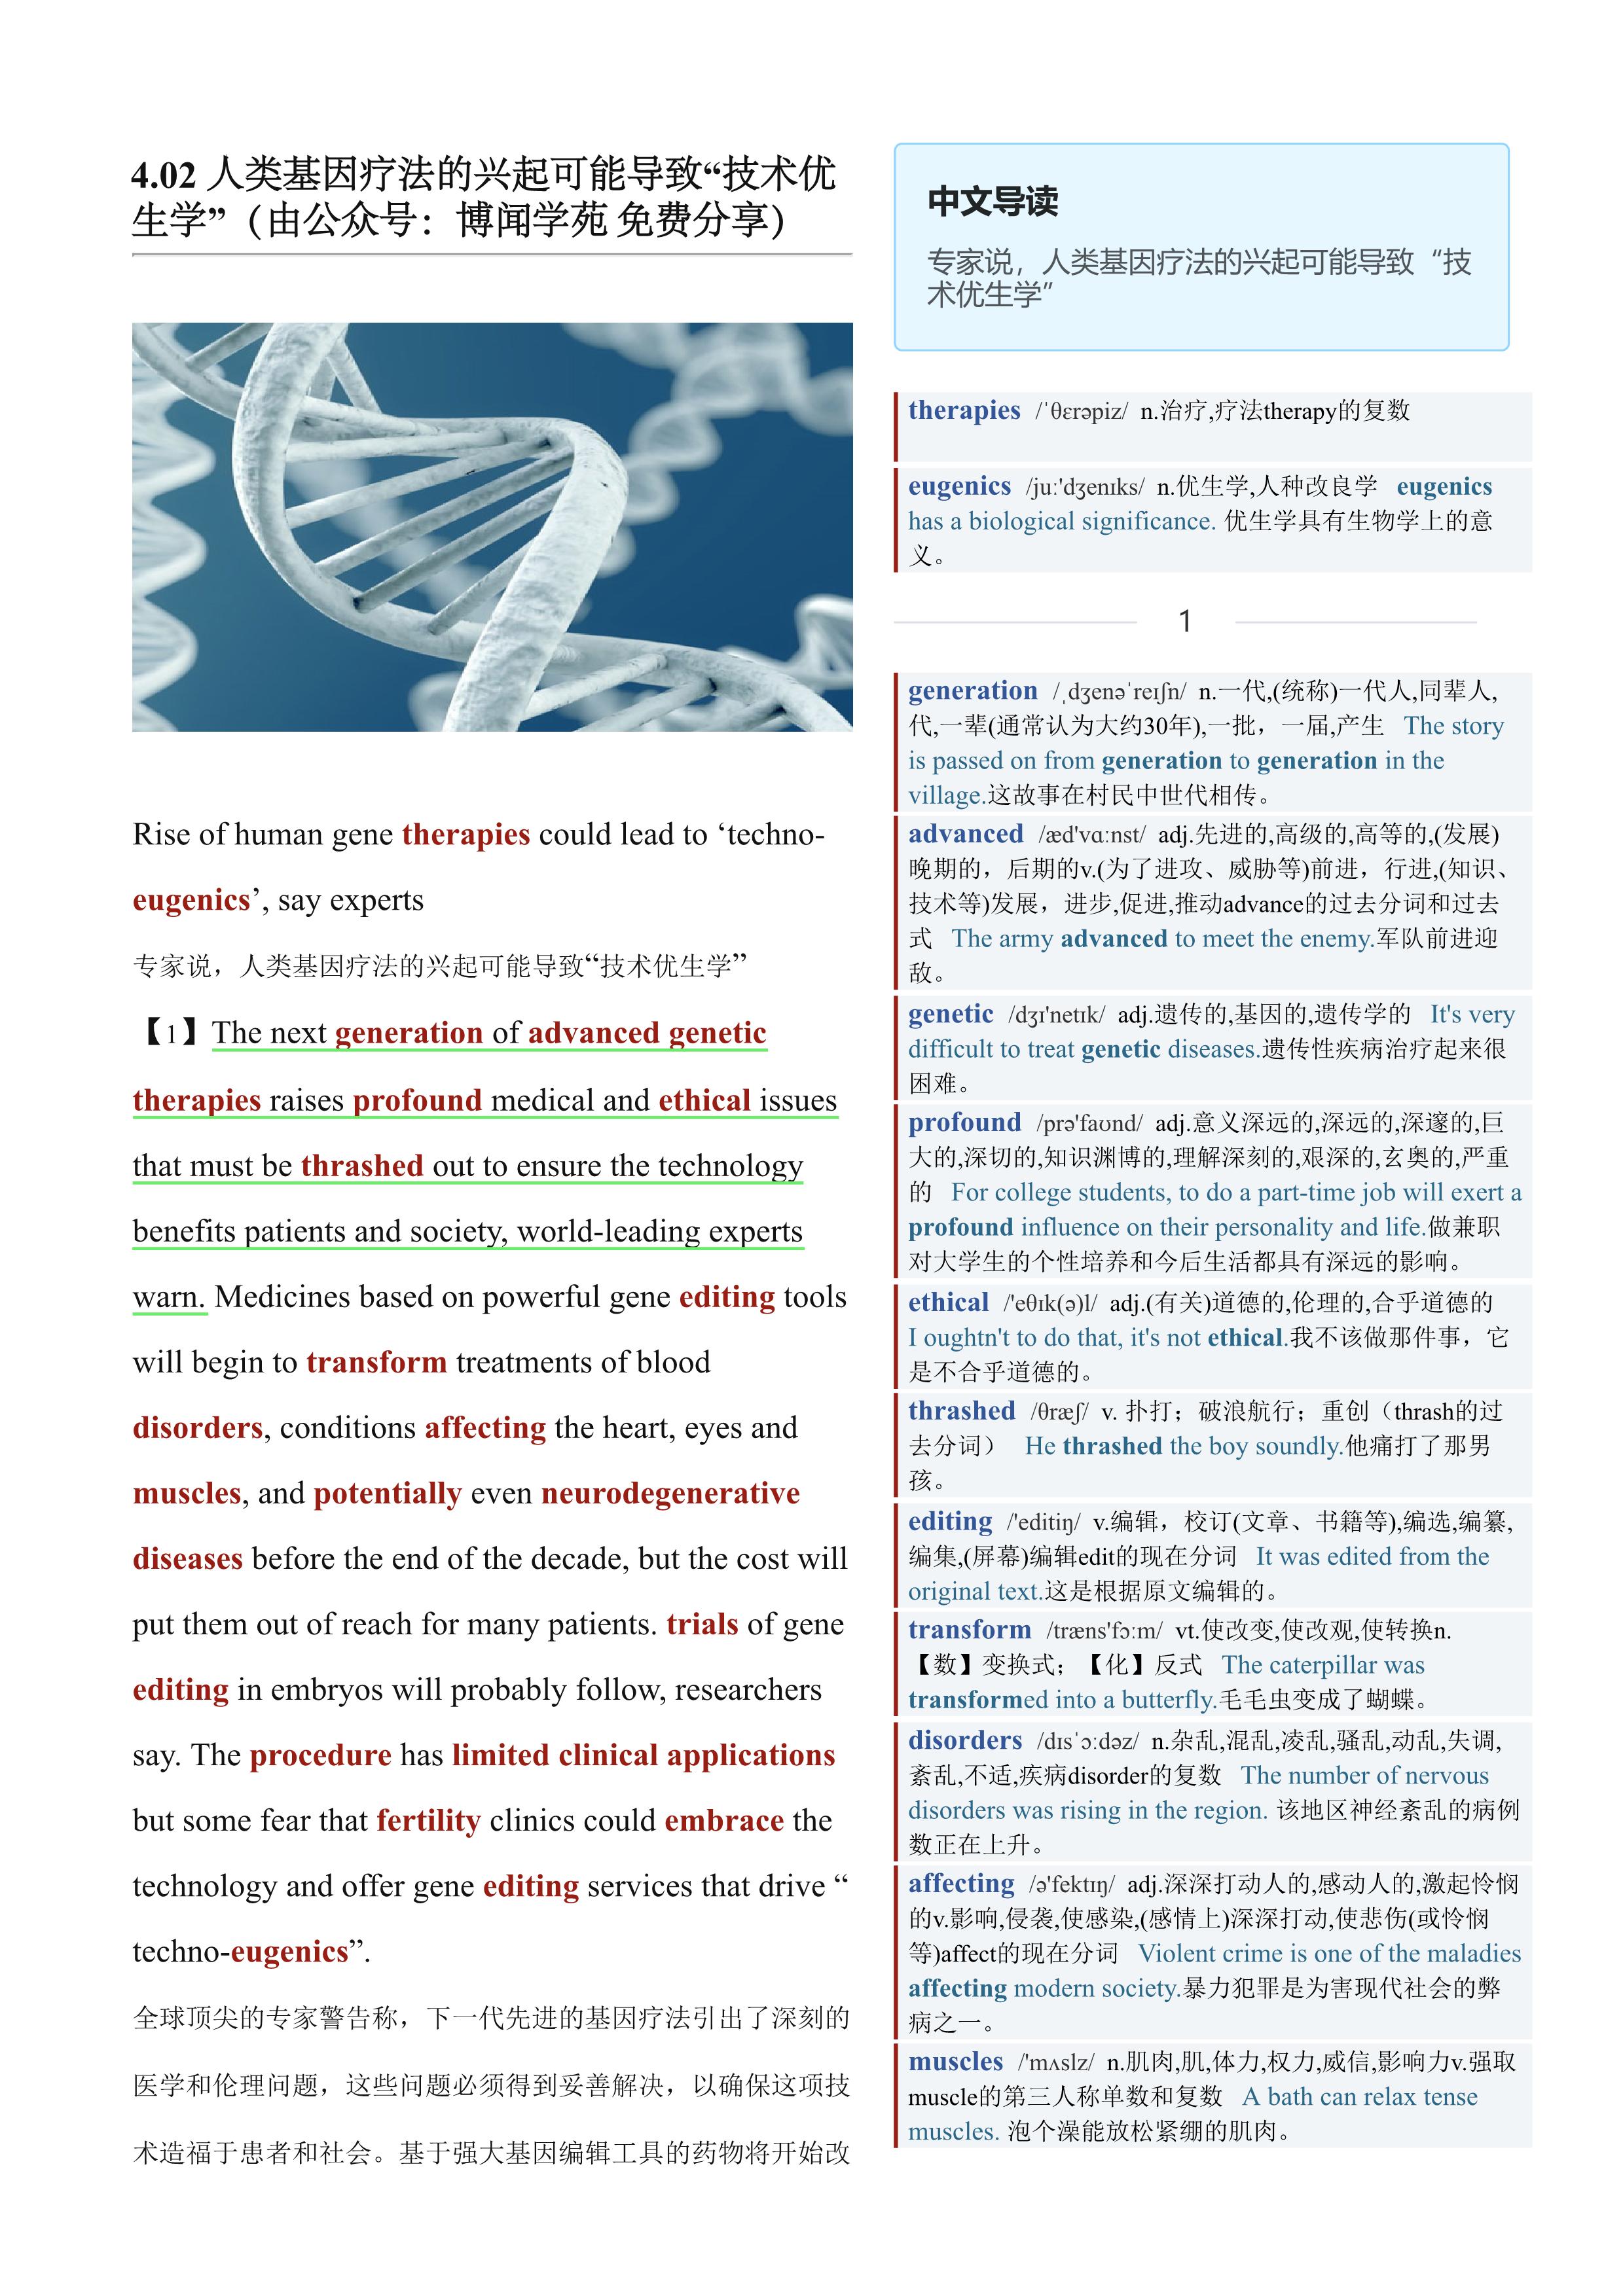 2023.04.02 卫报双语精读丨人类基因疗法的兴起可能导致“技术优生学” (.PDF/DOC)